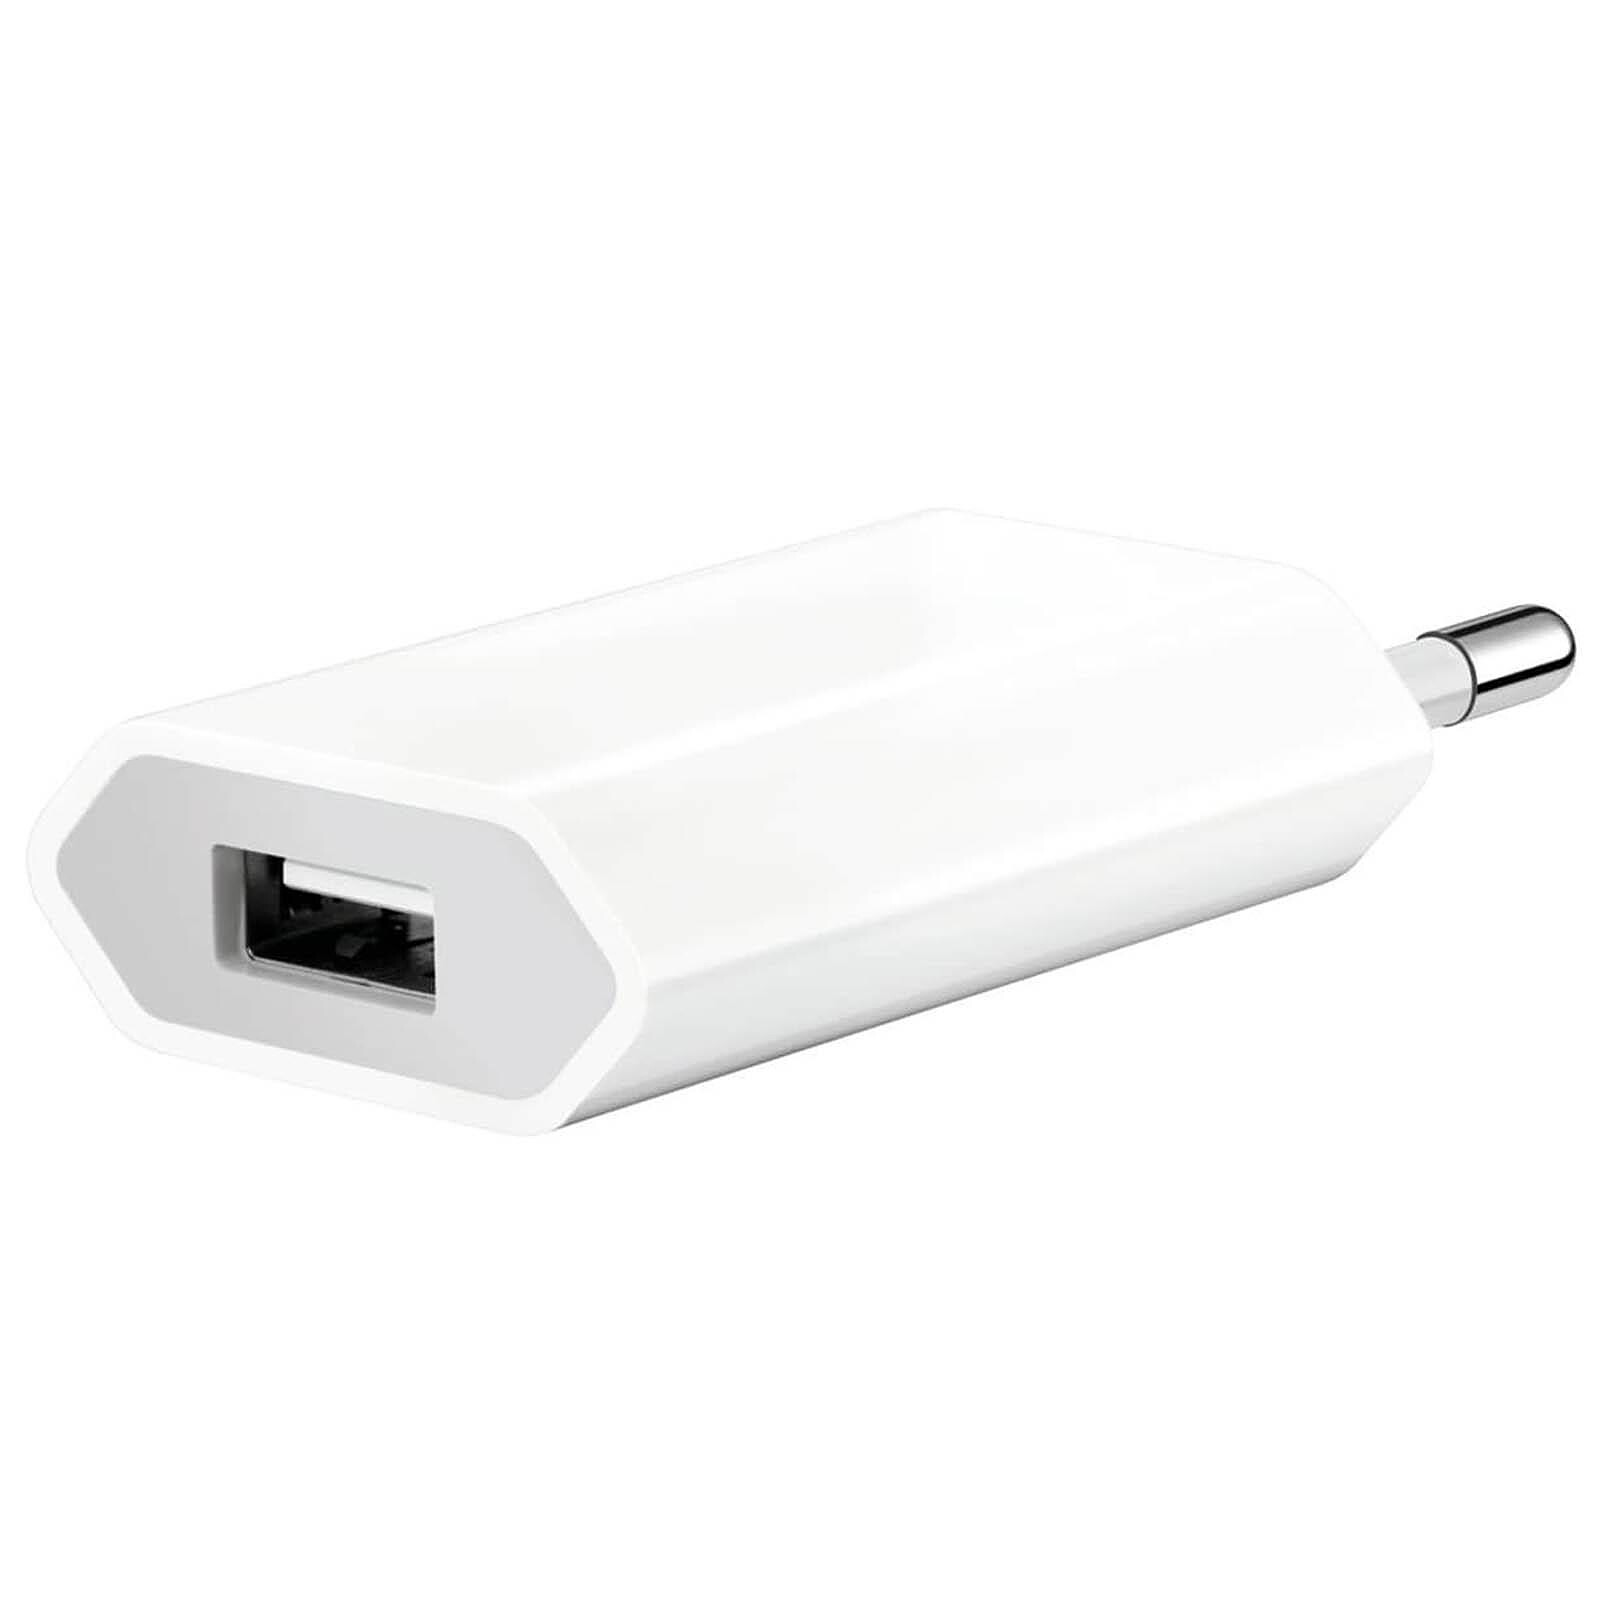 Купить зарядку эпл. Сетевое зарядное устройство Apple md813zm/a белый. Apple USB Power Adapter a1400. СЗУ Apple iphone/IPAD md813zm/a. USB Power Adapter md813zm/a.